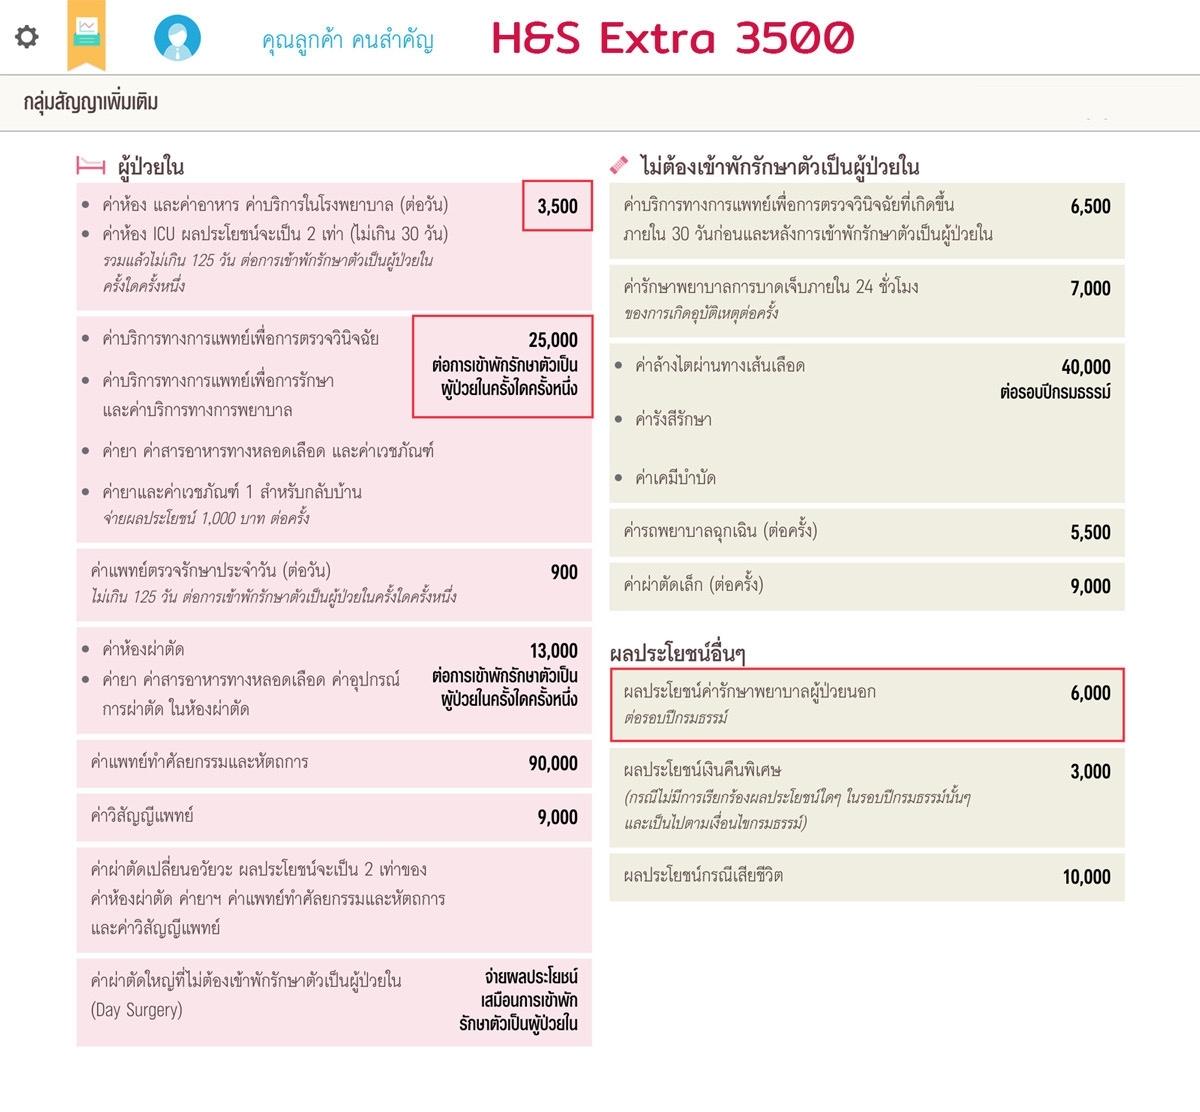 แผน H&S Extra 3500